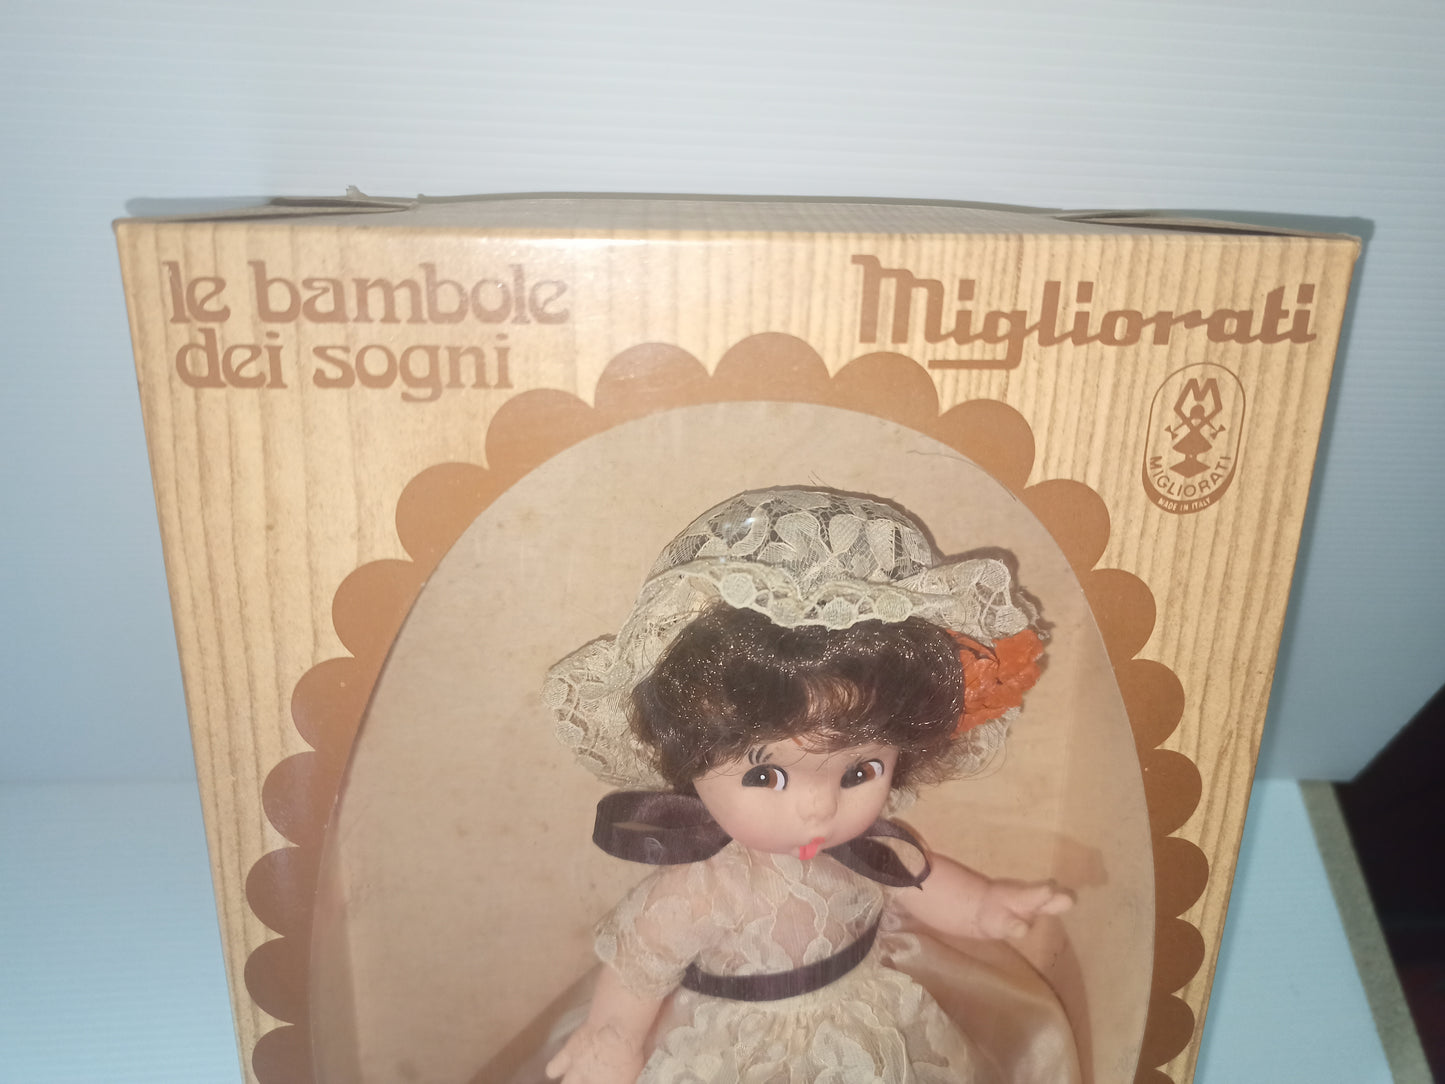 Migliori Bambole Dei Sogni doll, 1970s